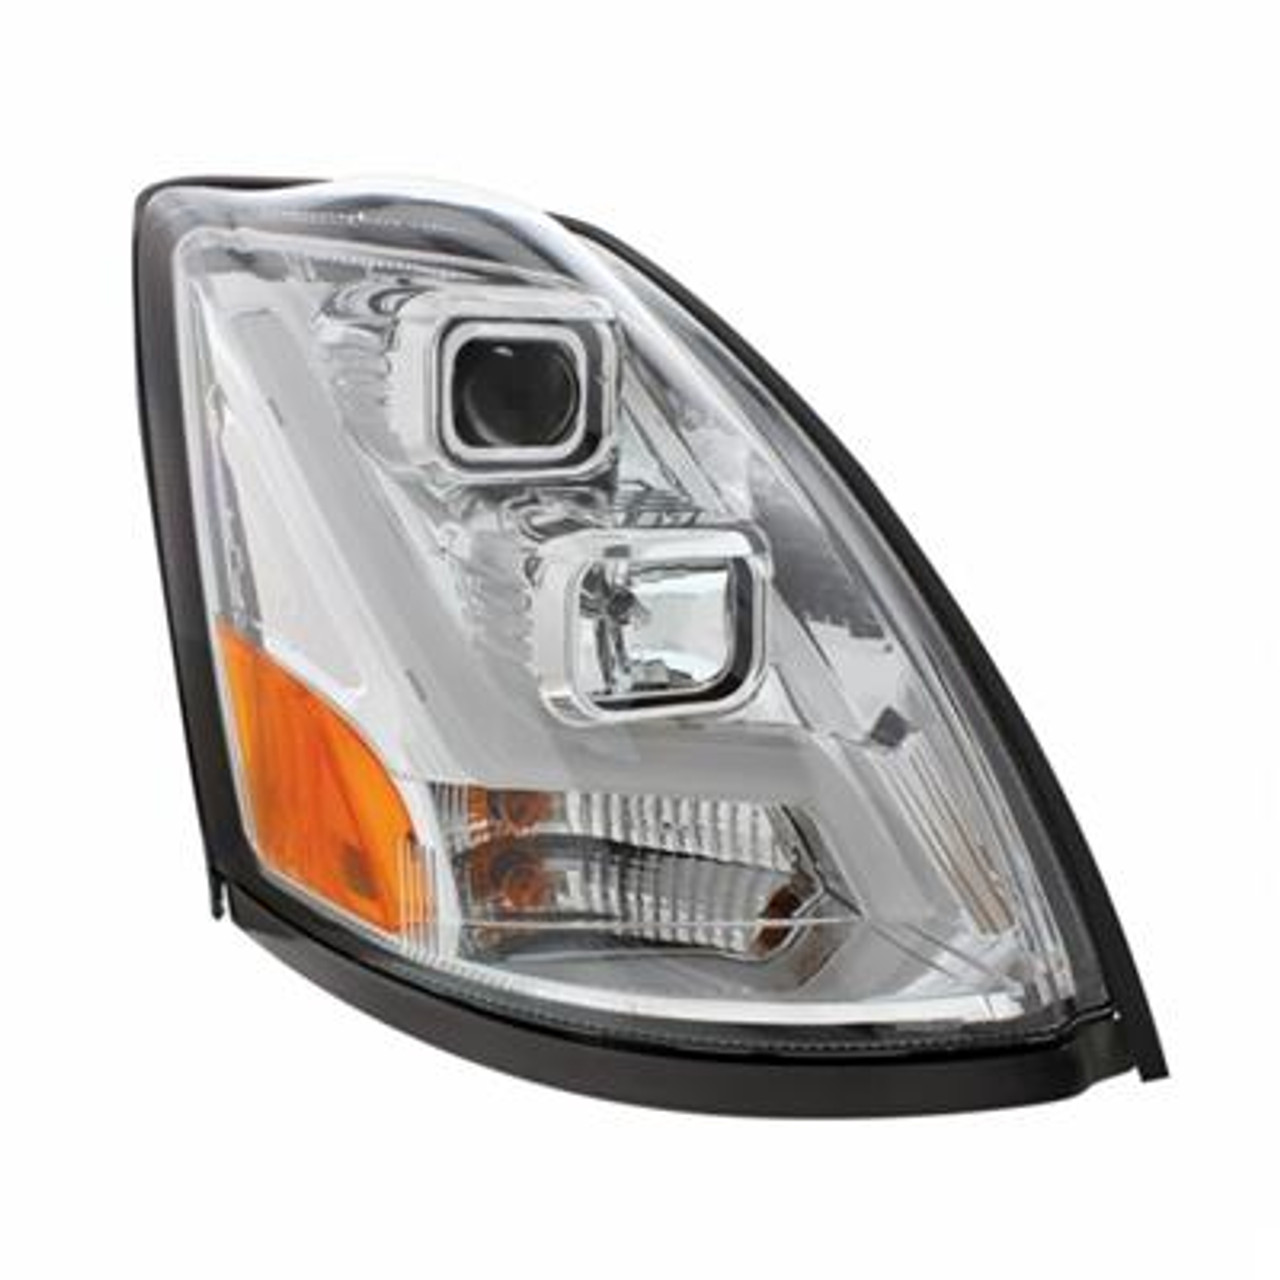 Chrome Projection Headlight With LED Position Light Bar For 2003-2017 Volvo VN/VNL - Passenger